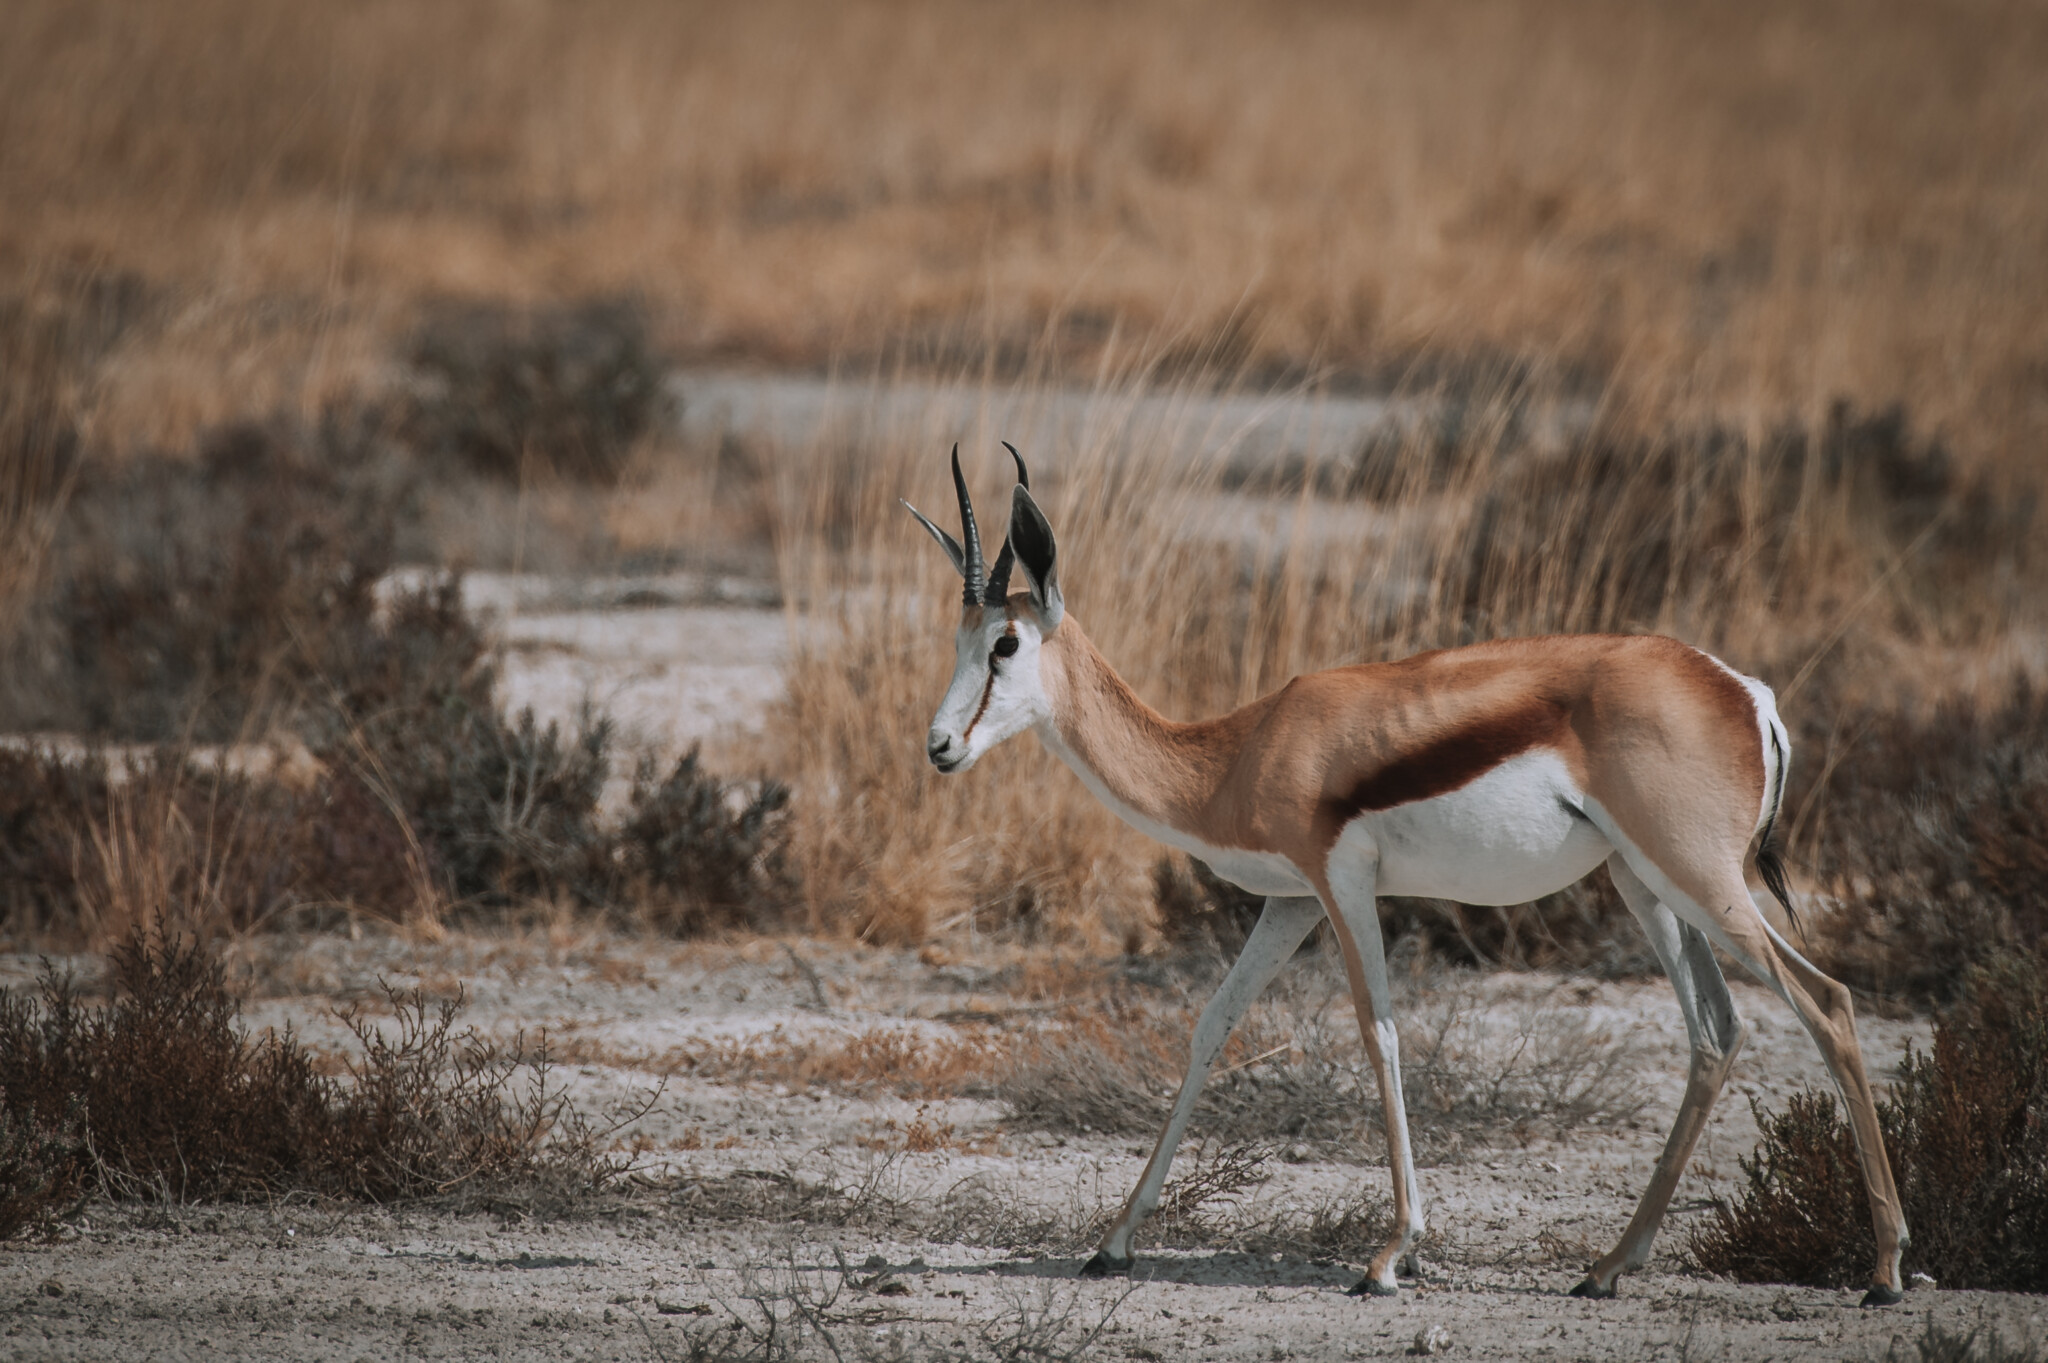 Springböcke in der Kalahari